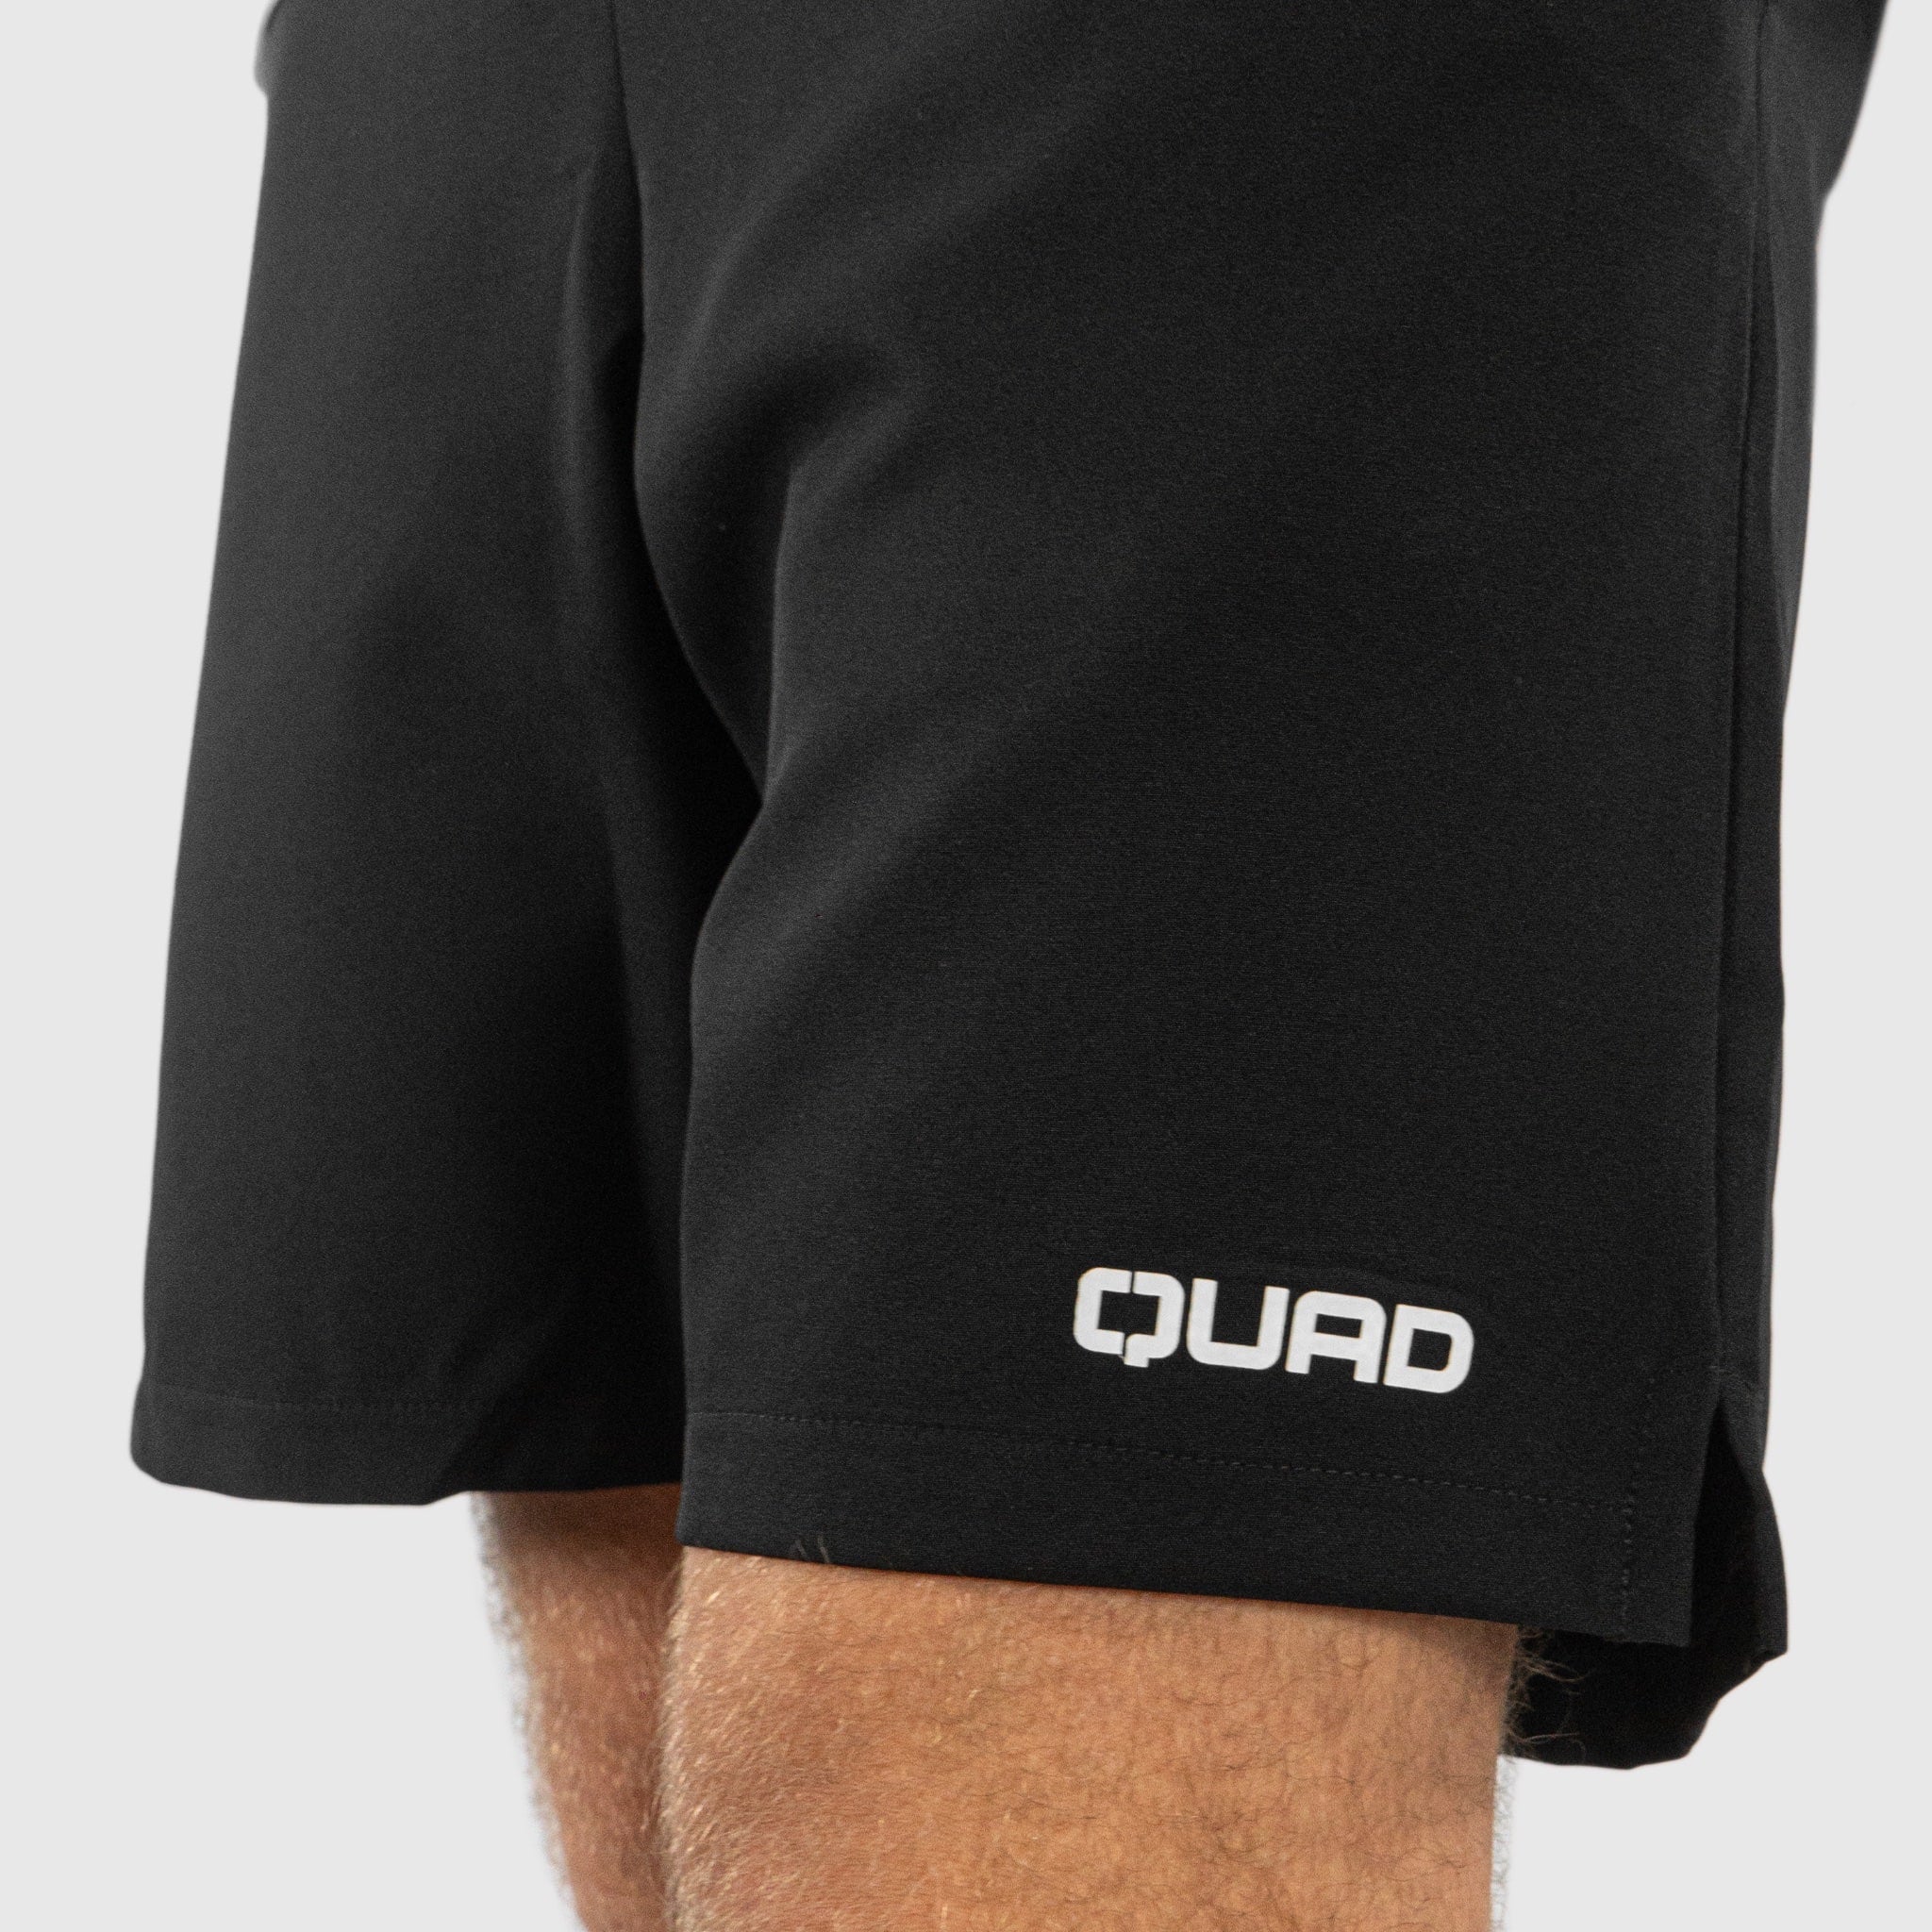 Quad Padel Court shorts black details